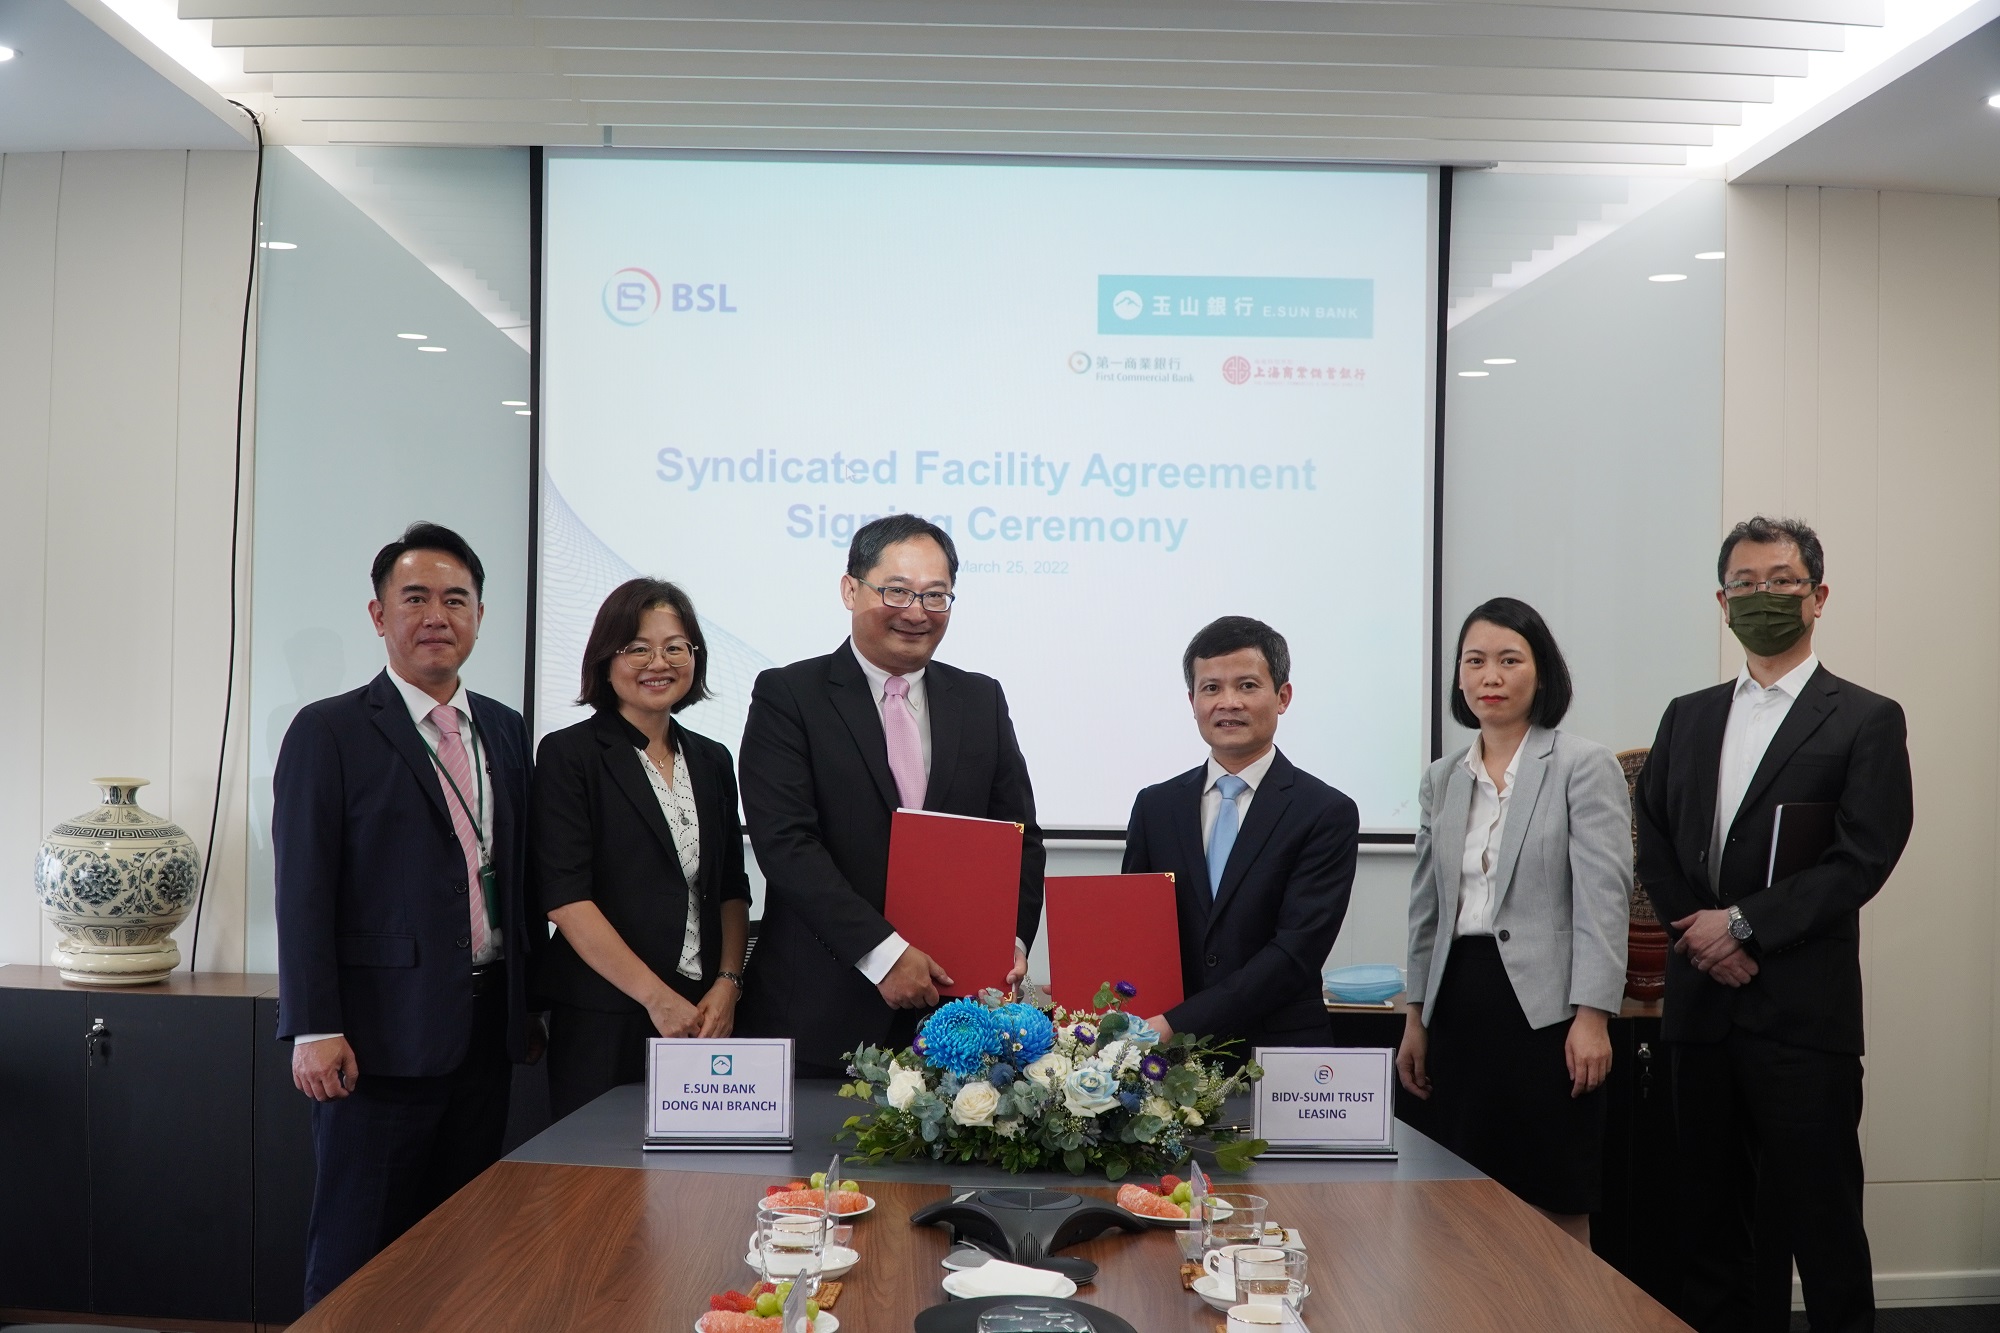 BIDV-SuMi TRUST Leasing (BSL) ký kết Thỏa thuận Khoản vay Hợp vốn tín chấp với các chi nhánh ngân hàng nước ngoài tại Việt nam